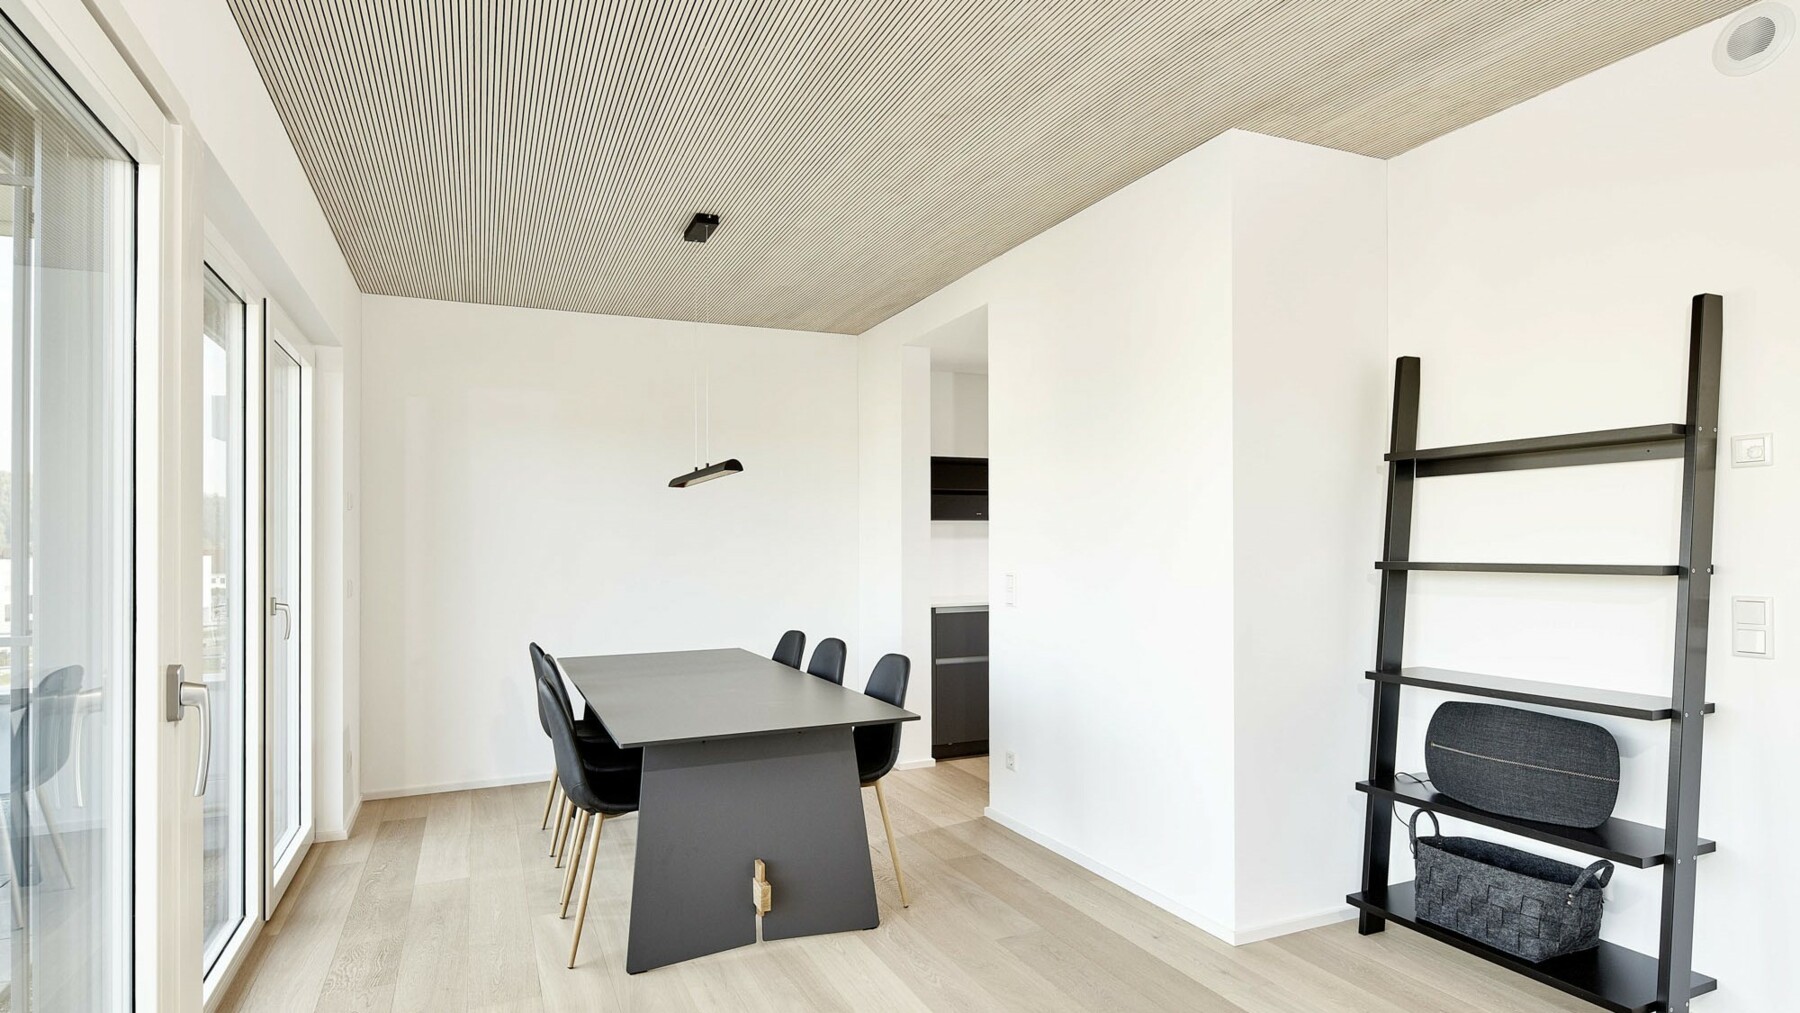 In der minimalistisch eingerichteten Wohnung mit dunklen Möbeln kommt die Deckensichtseite aus fein profilierter Weißtanne von Lignotrend besonders gut zur Geltung. 